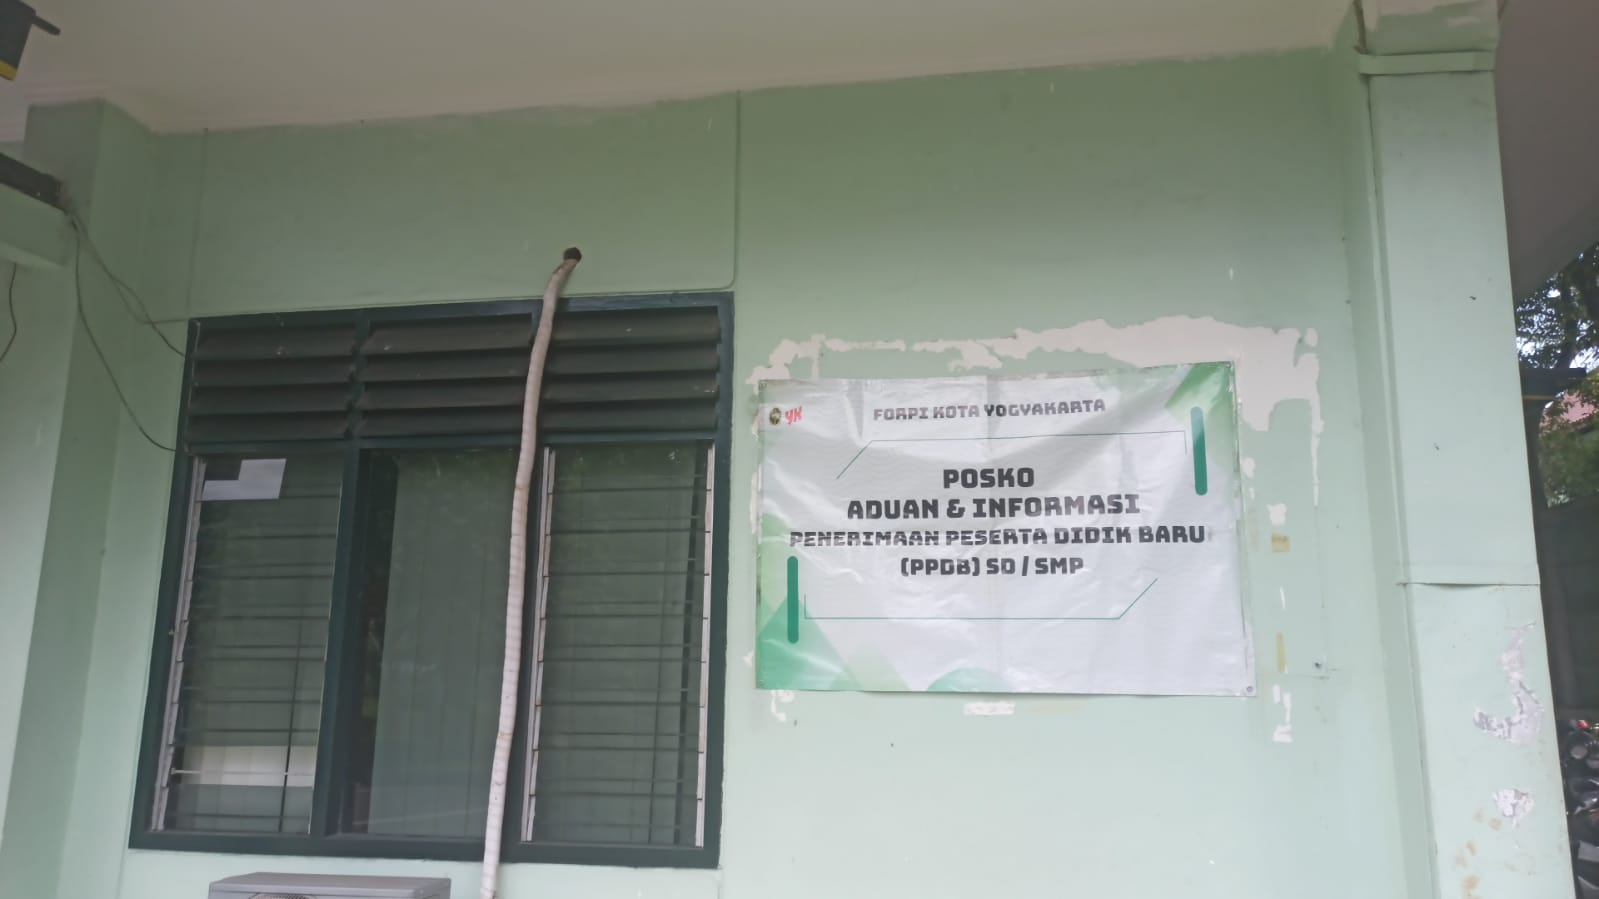 Cegah Kecurangan PPDB, Forpi Kota Yogyakarta Buka Posko Aduan dan Informasi